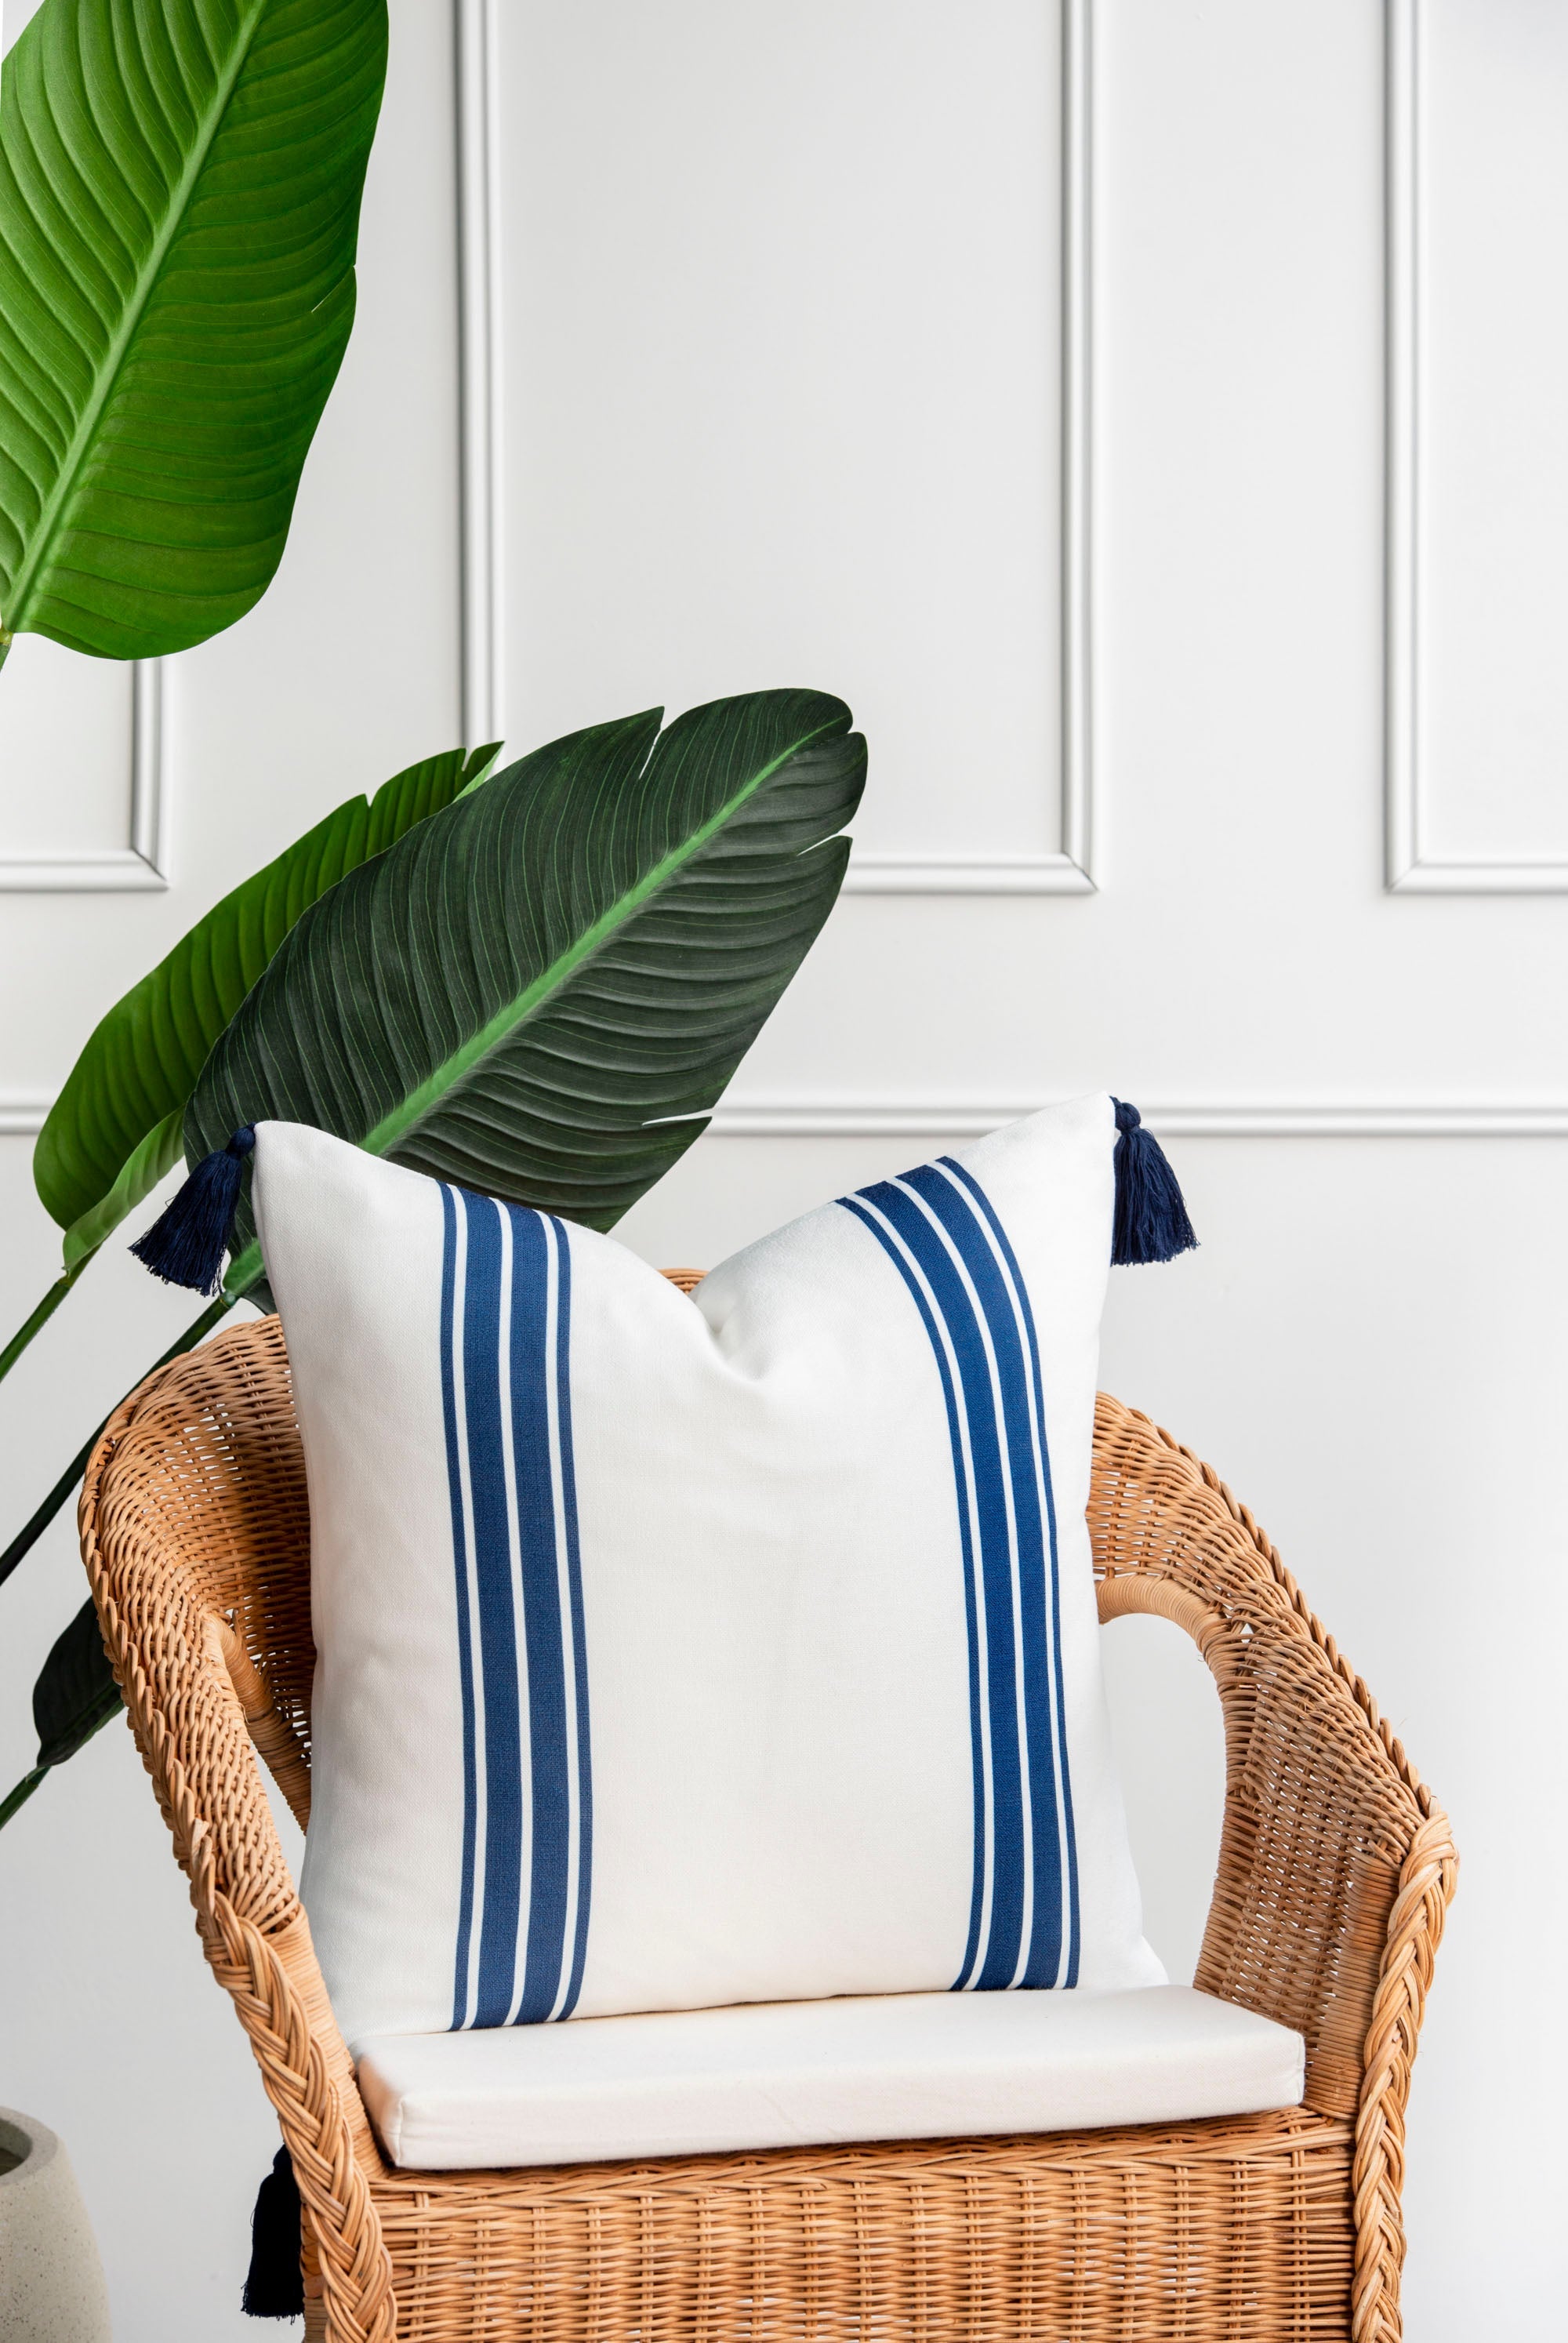 Coastal Indoor Outdoor Pillow Cover, Aviv, Striped Tassel, Navy Blue, 20"x20"-1